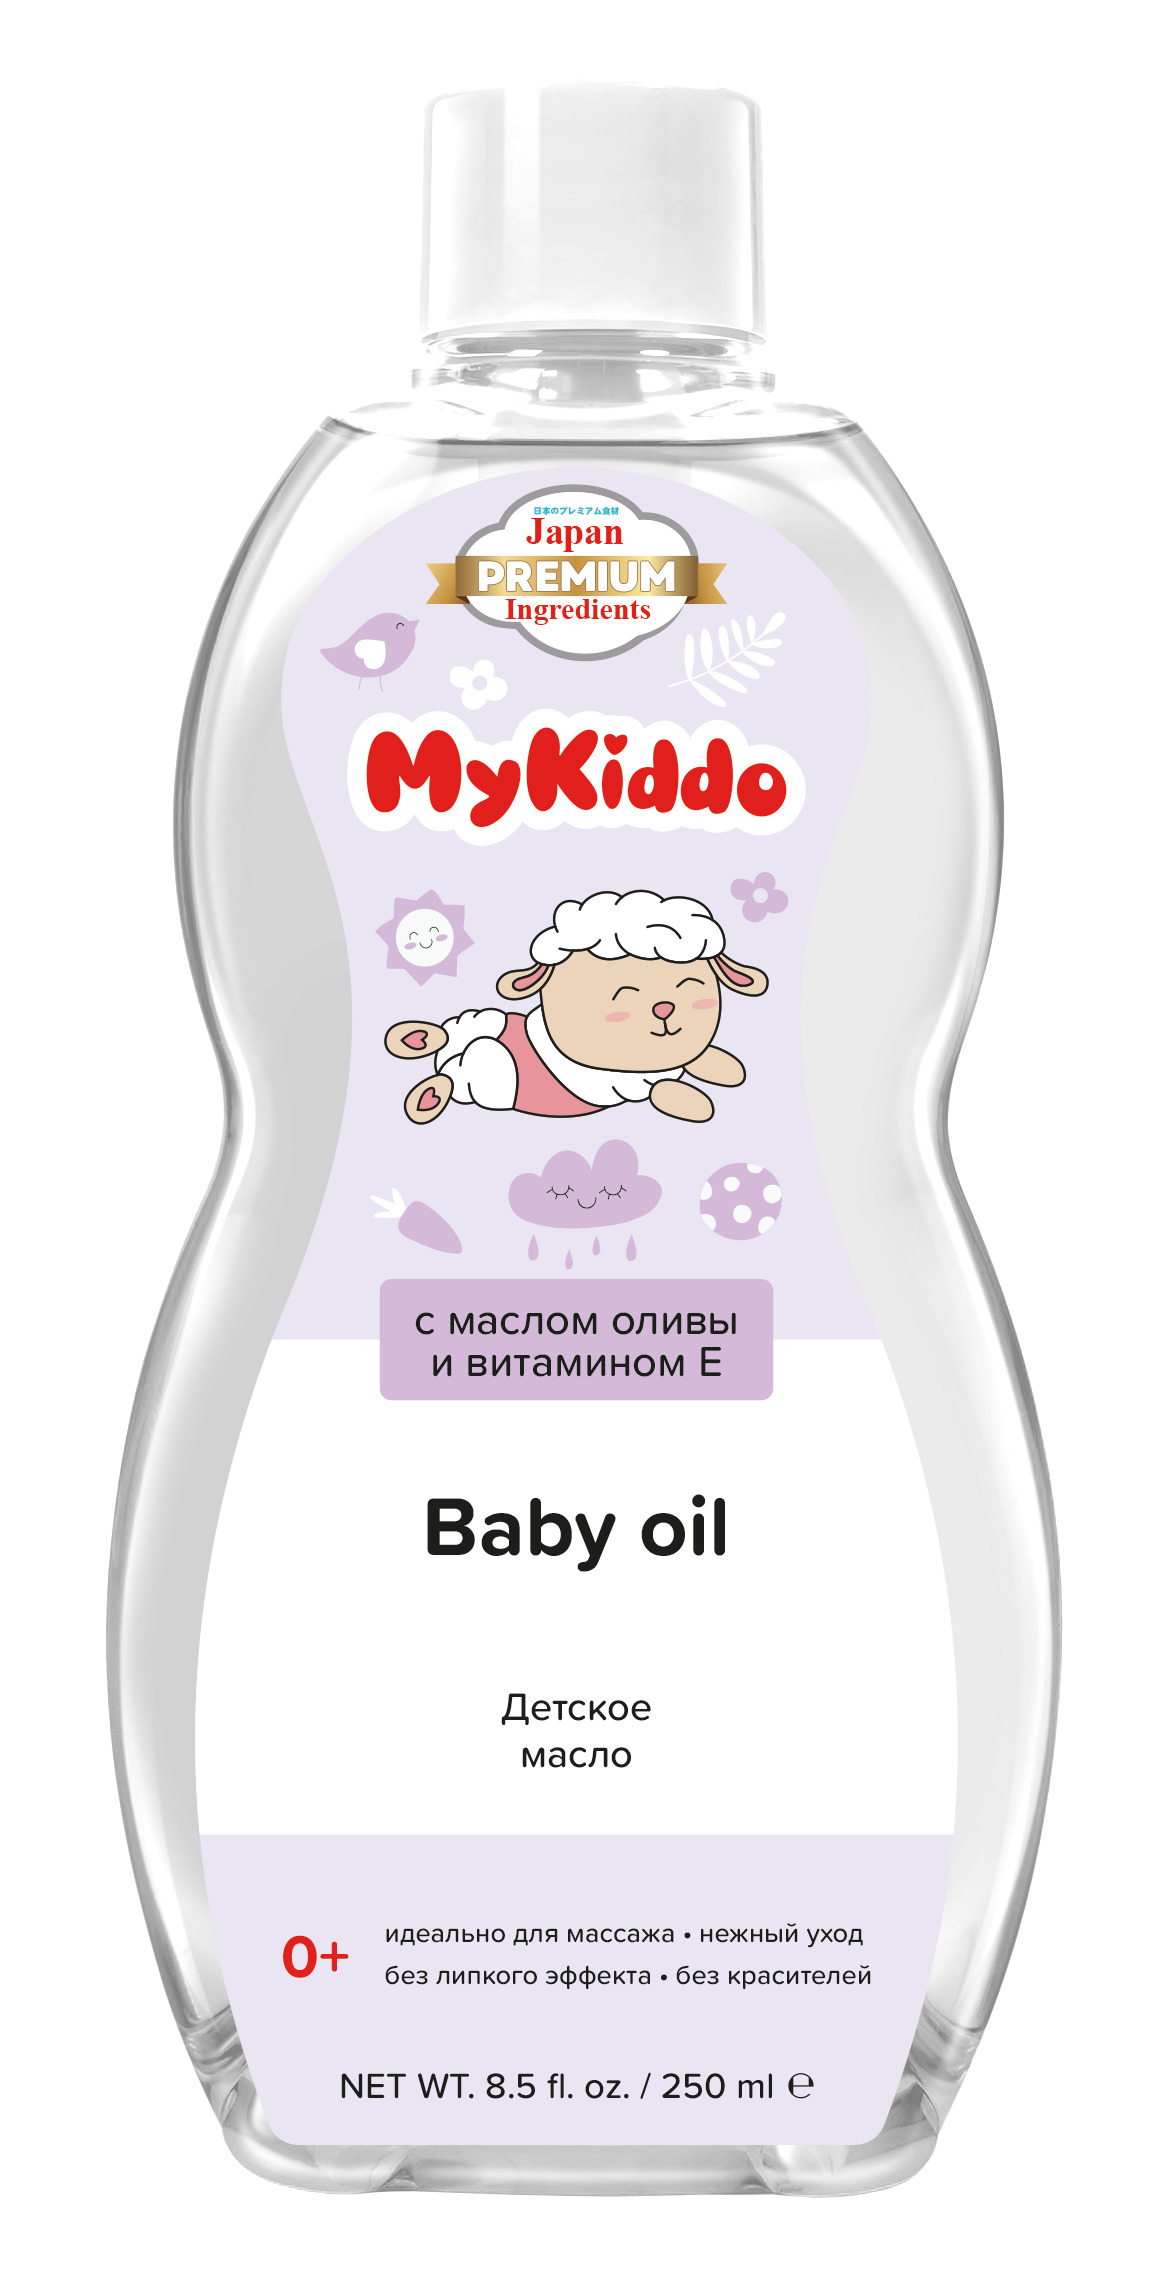 Масло детское MyKiddo массажное масло для нежного ухода за малышом 250 мл